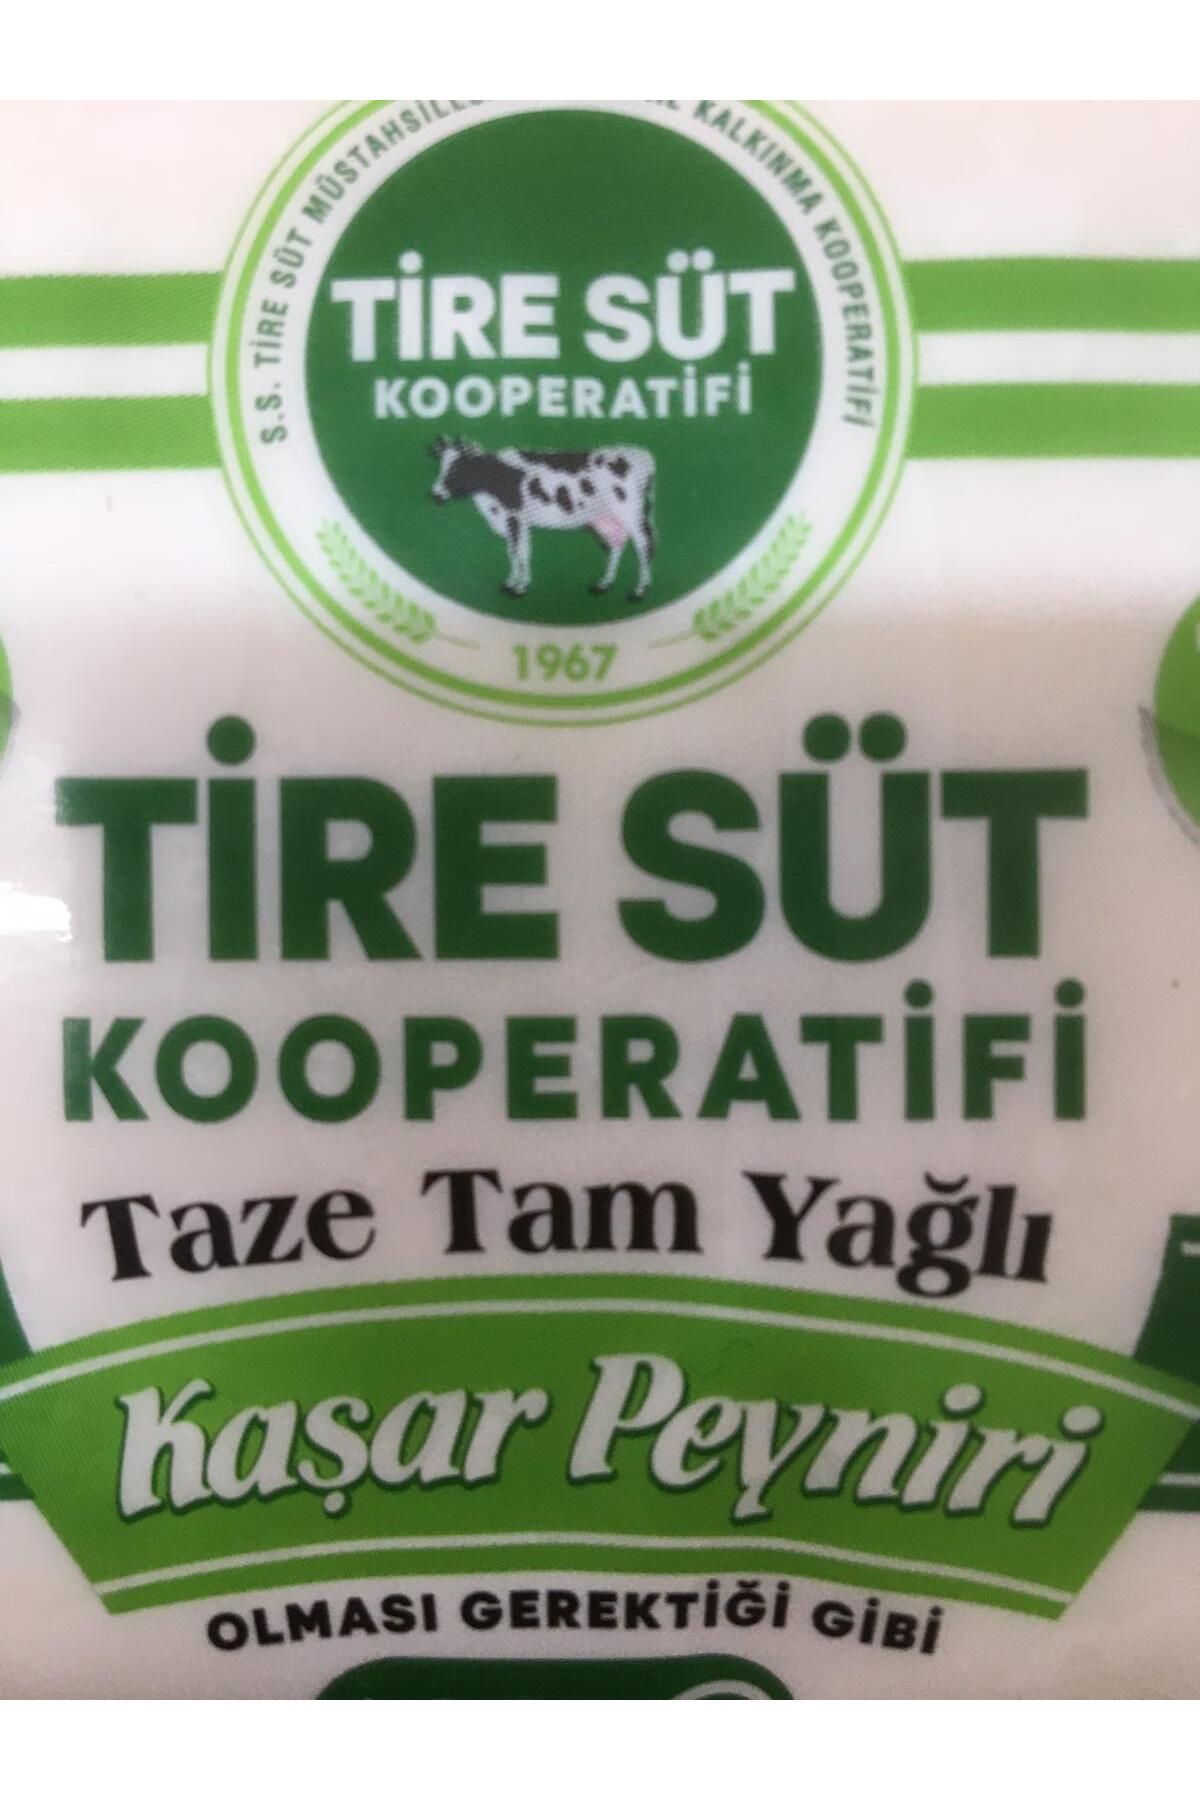 bodrum organik pazar Taze Tam Yağlı Kahvaltılık Tire Kaşar Kaşar Peyniri 600 Gr